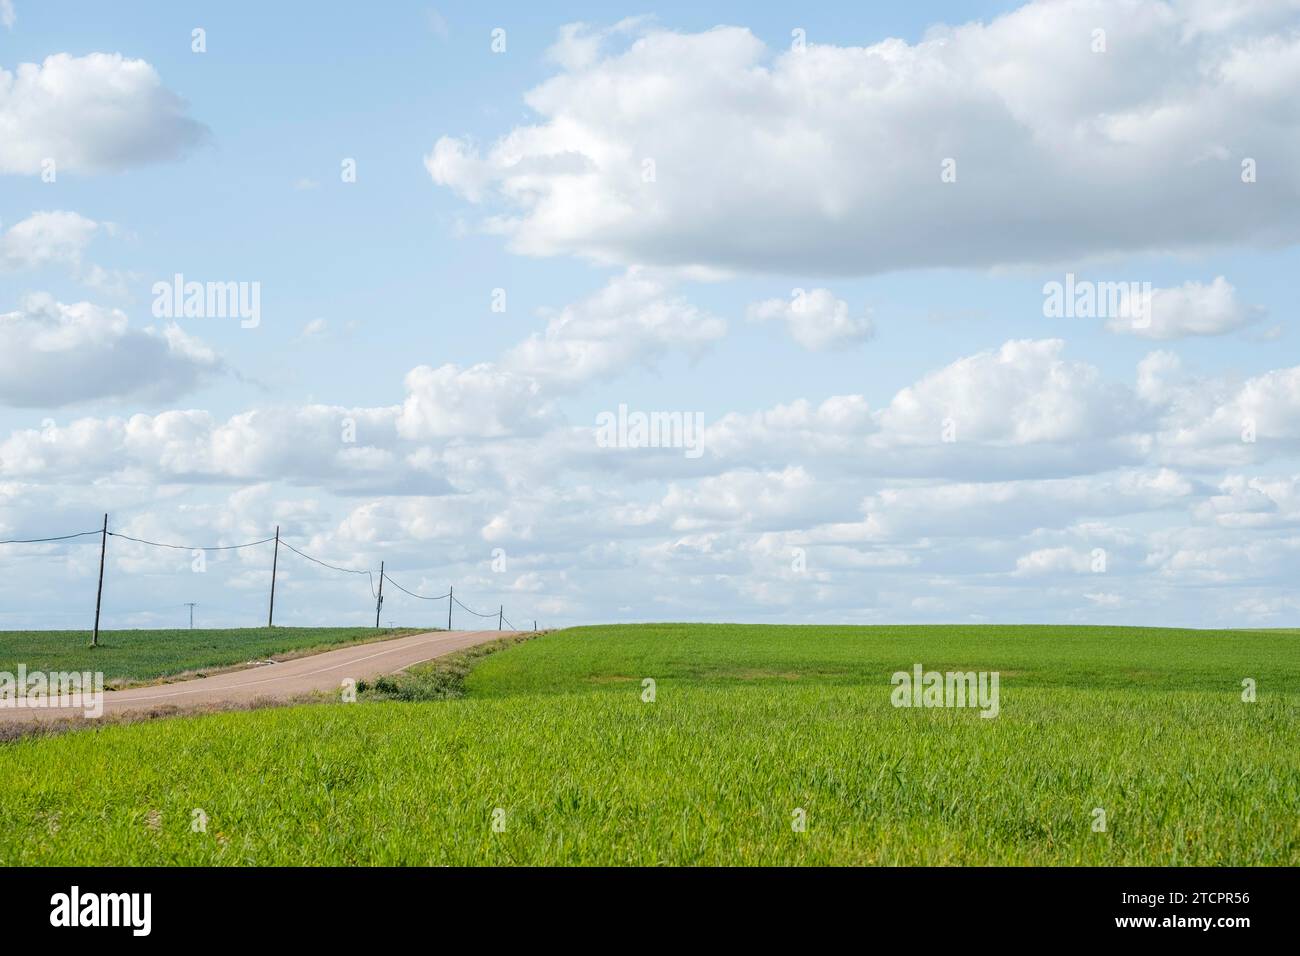 Eine ländliche Szene mit Wiesen und einer gewundenen Landstraße, die die ruhige Schönheit der Landschaft und die Umarmung der Natur zeigt Stockfoto